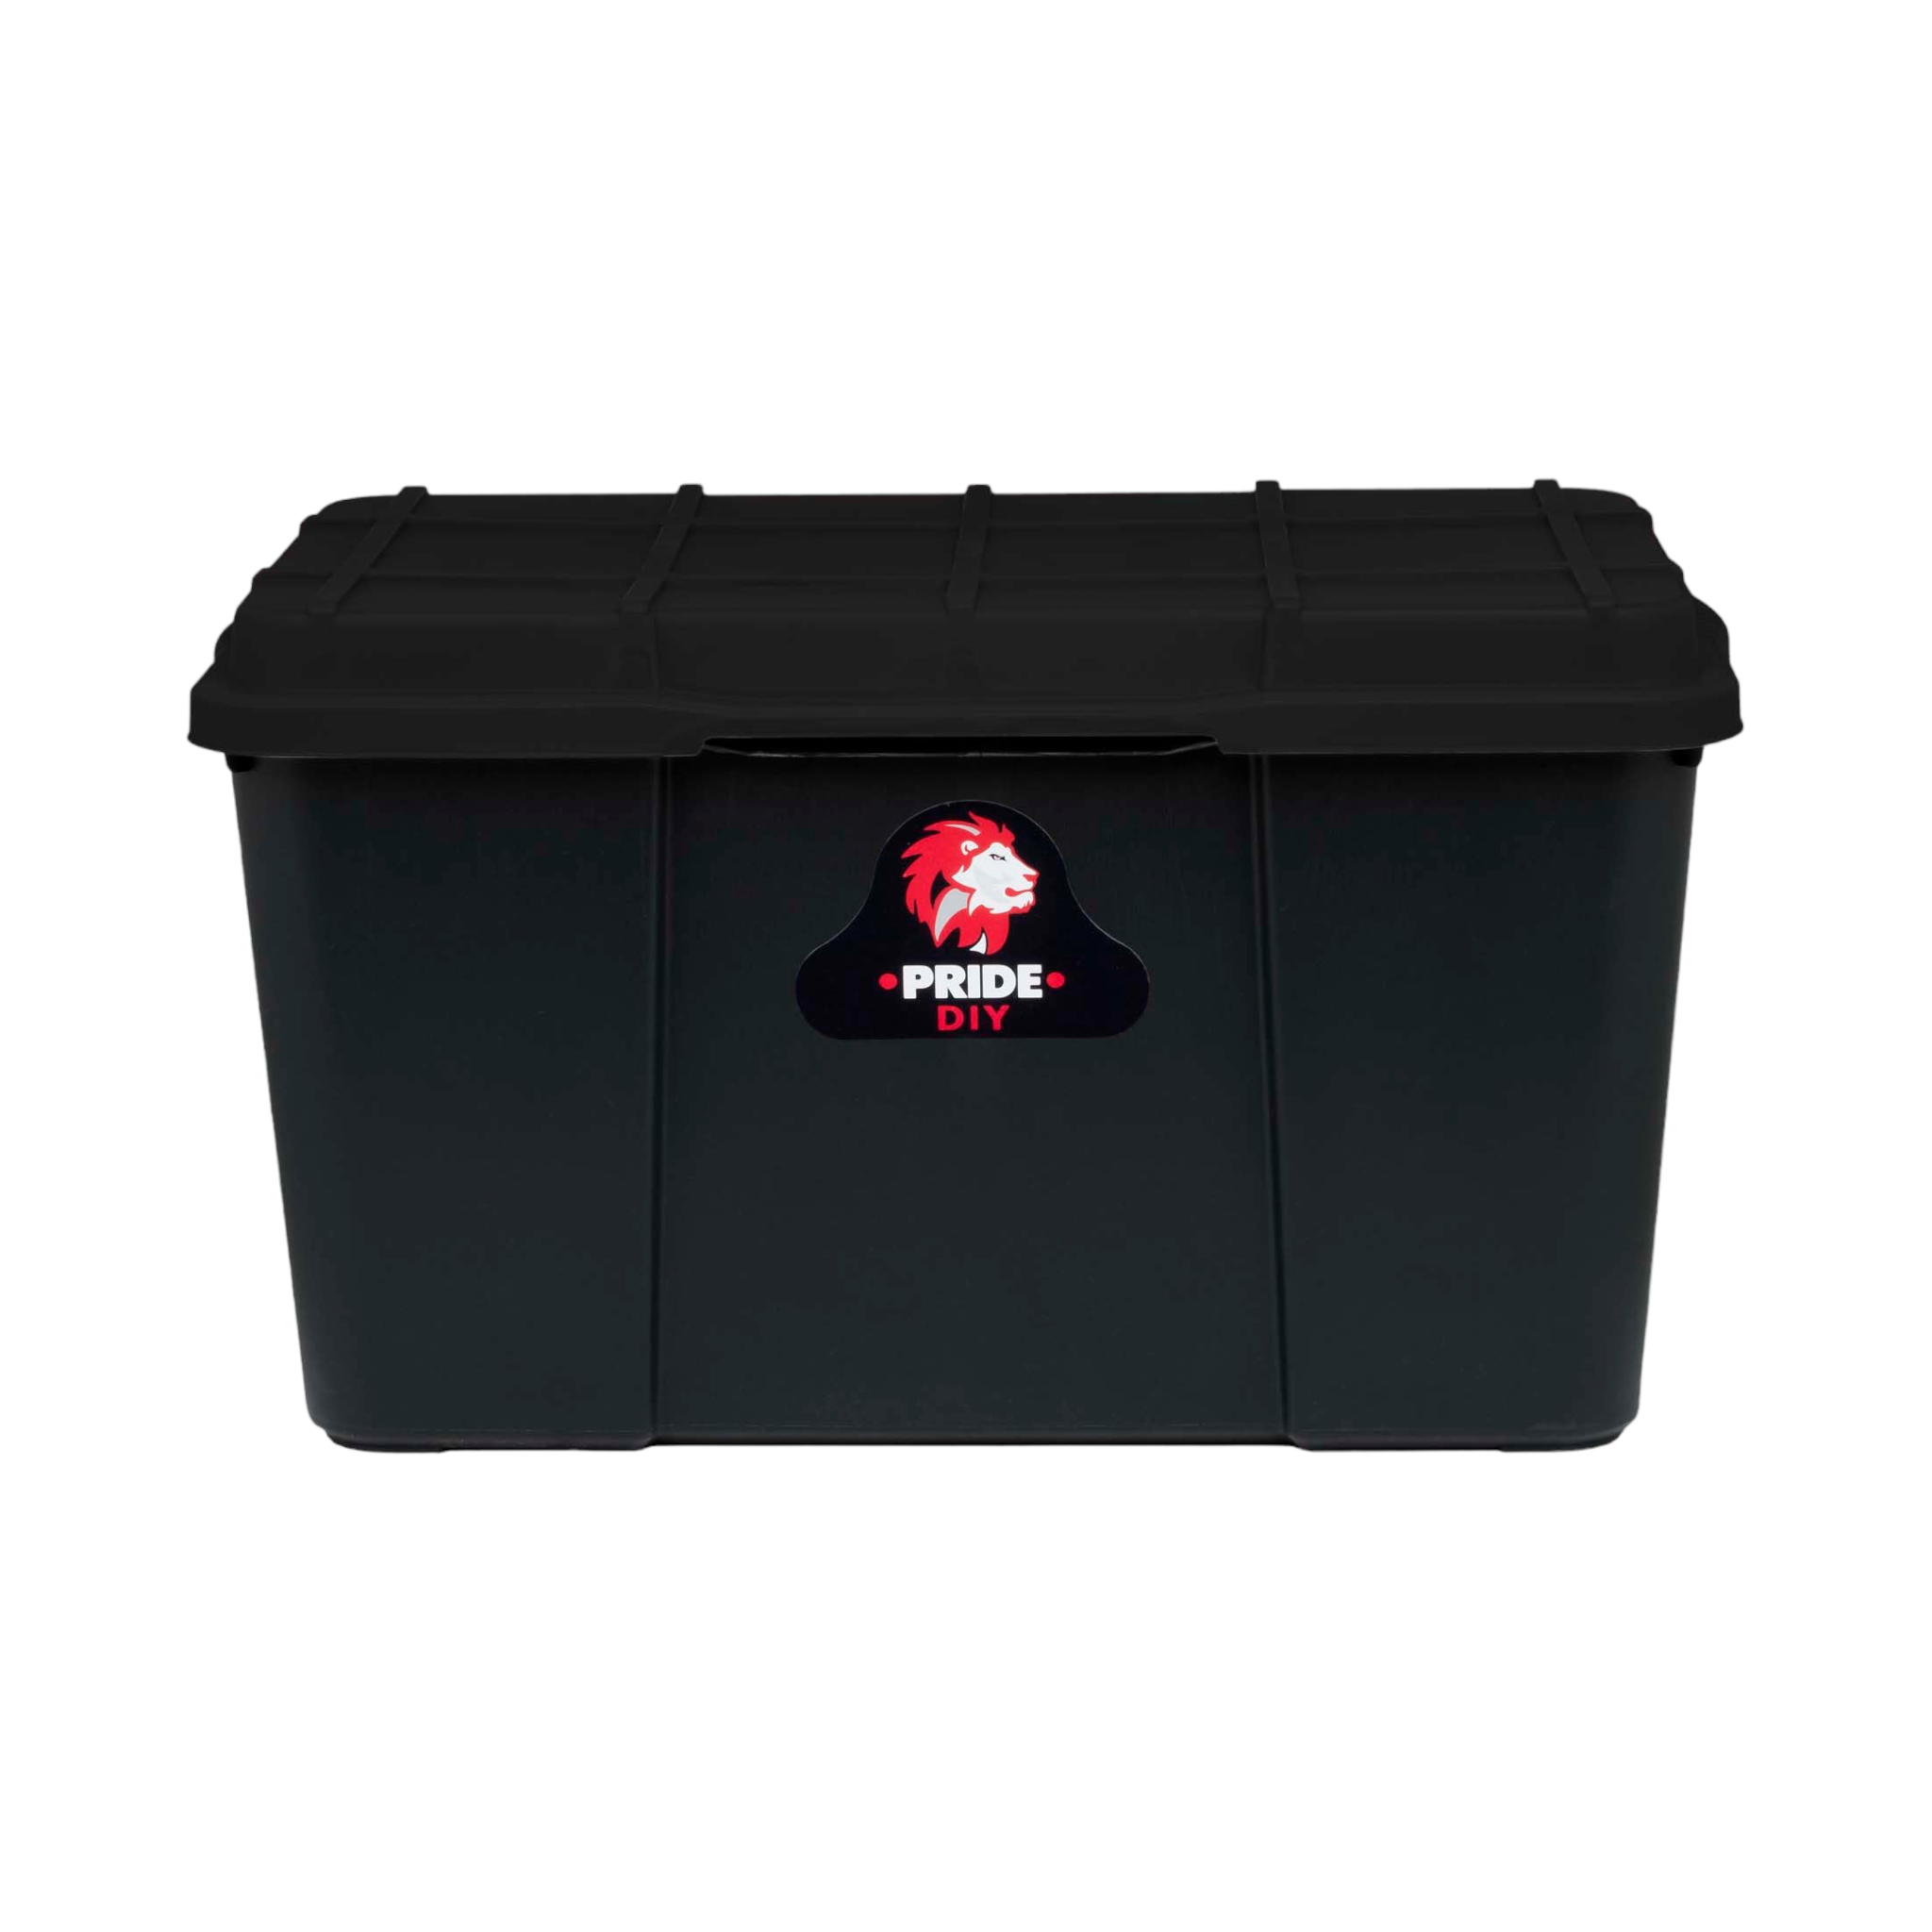 45L Pride Plastic Storage Box Utility Container Box Black